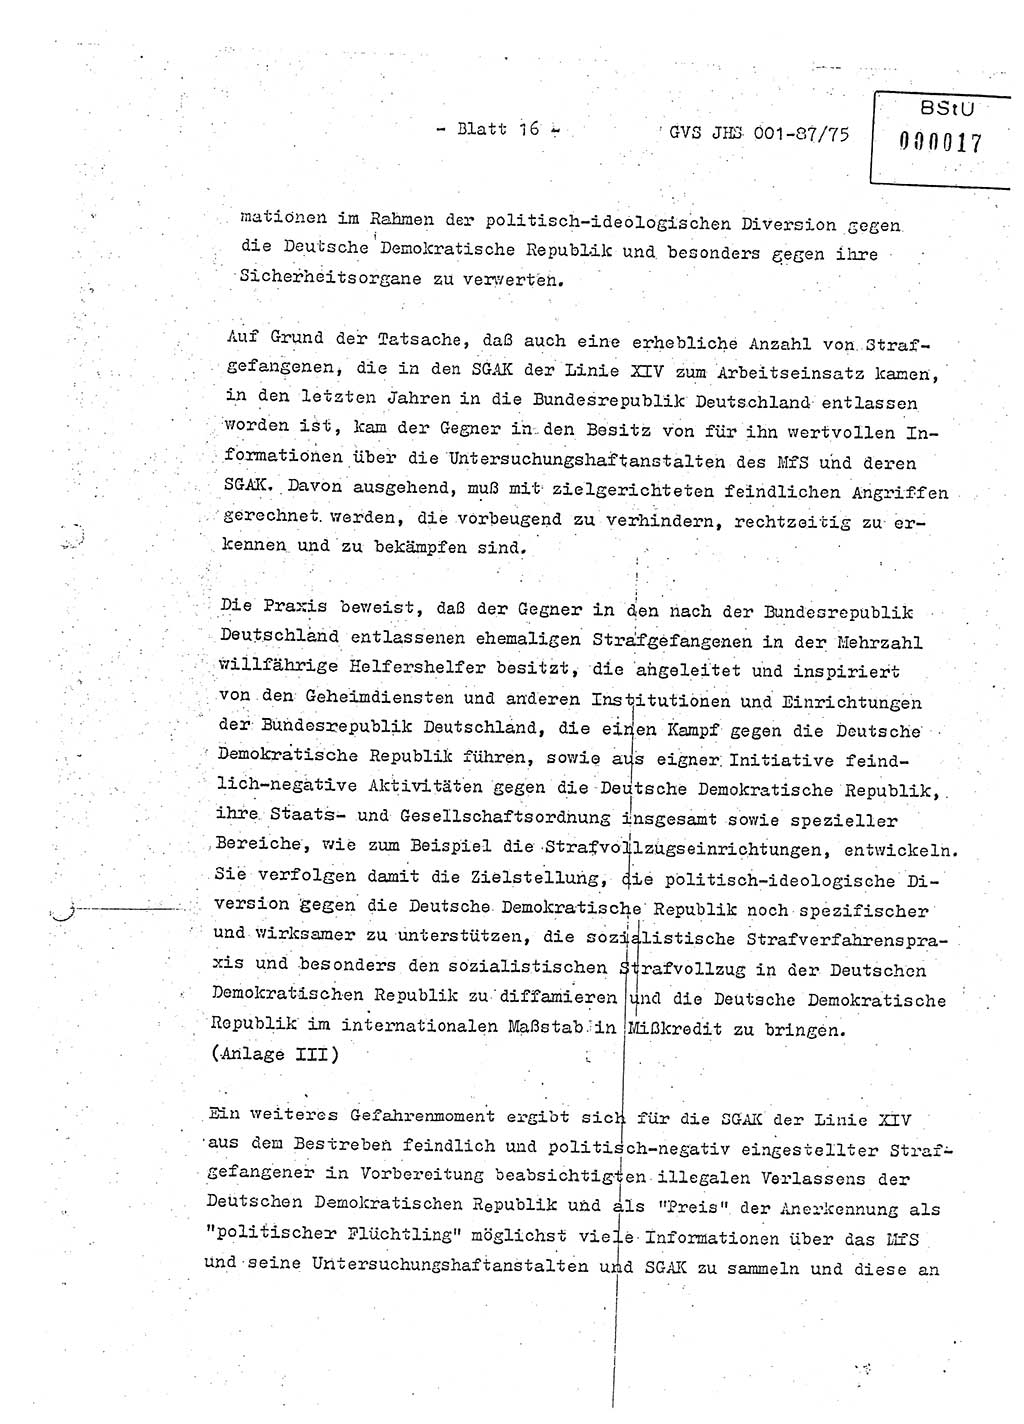 Diplomarbeit Hauptmann Volkmar Heinz (Abt. ⅩⅣ), Oberleutnant Lothar Rüdiger (BV Lpz. Abt. Ⅺ), Ministerium für Staatssicherheit (MfS) [Deutsche Demokratische Republik (DDR)], Juristische Hochschule (JHS), Geheime Verschlußsache (GVS) o001-87/75, Potsdam 1975, Seite 16 (Dipl.-Arb. MfS DDR JHS GVS o001-87/75 1975, S. 16)